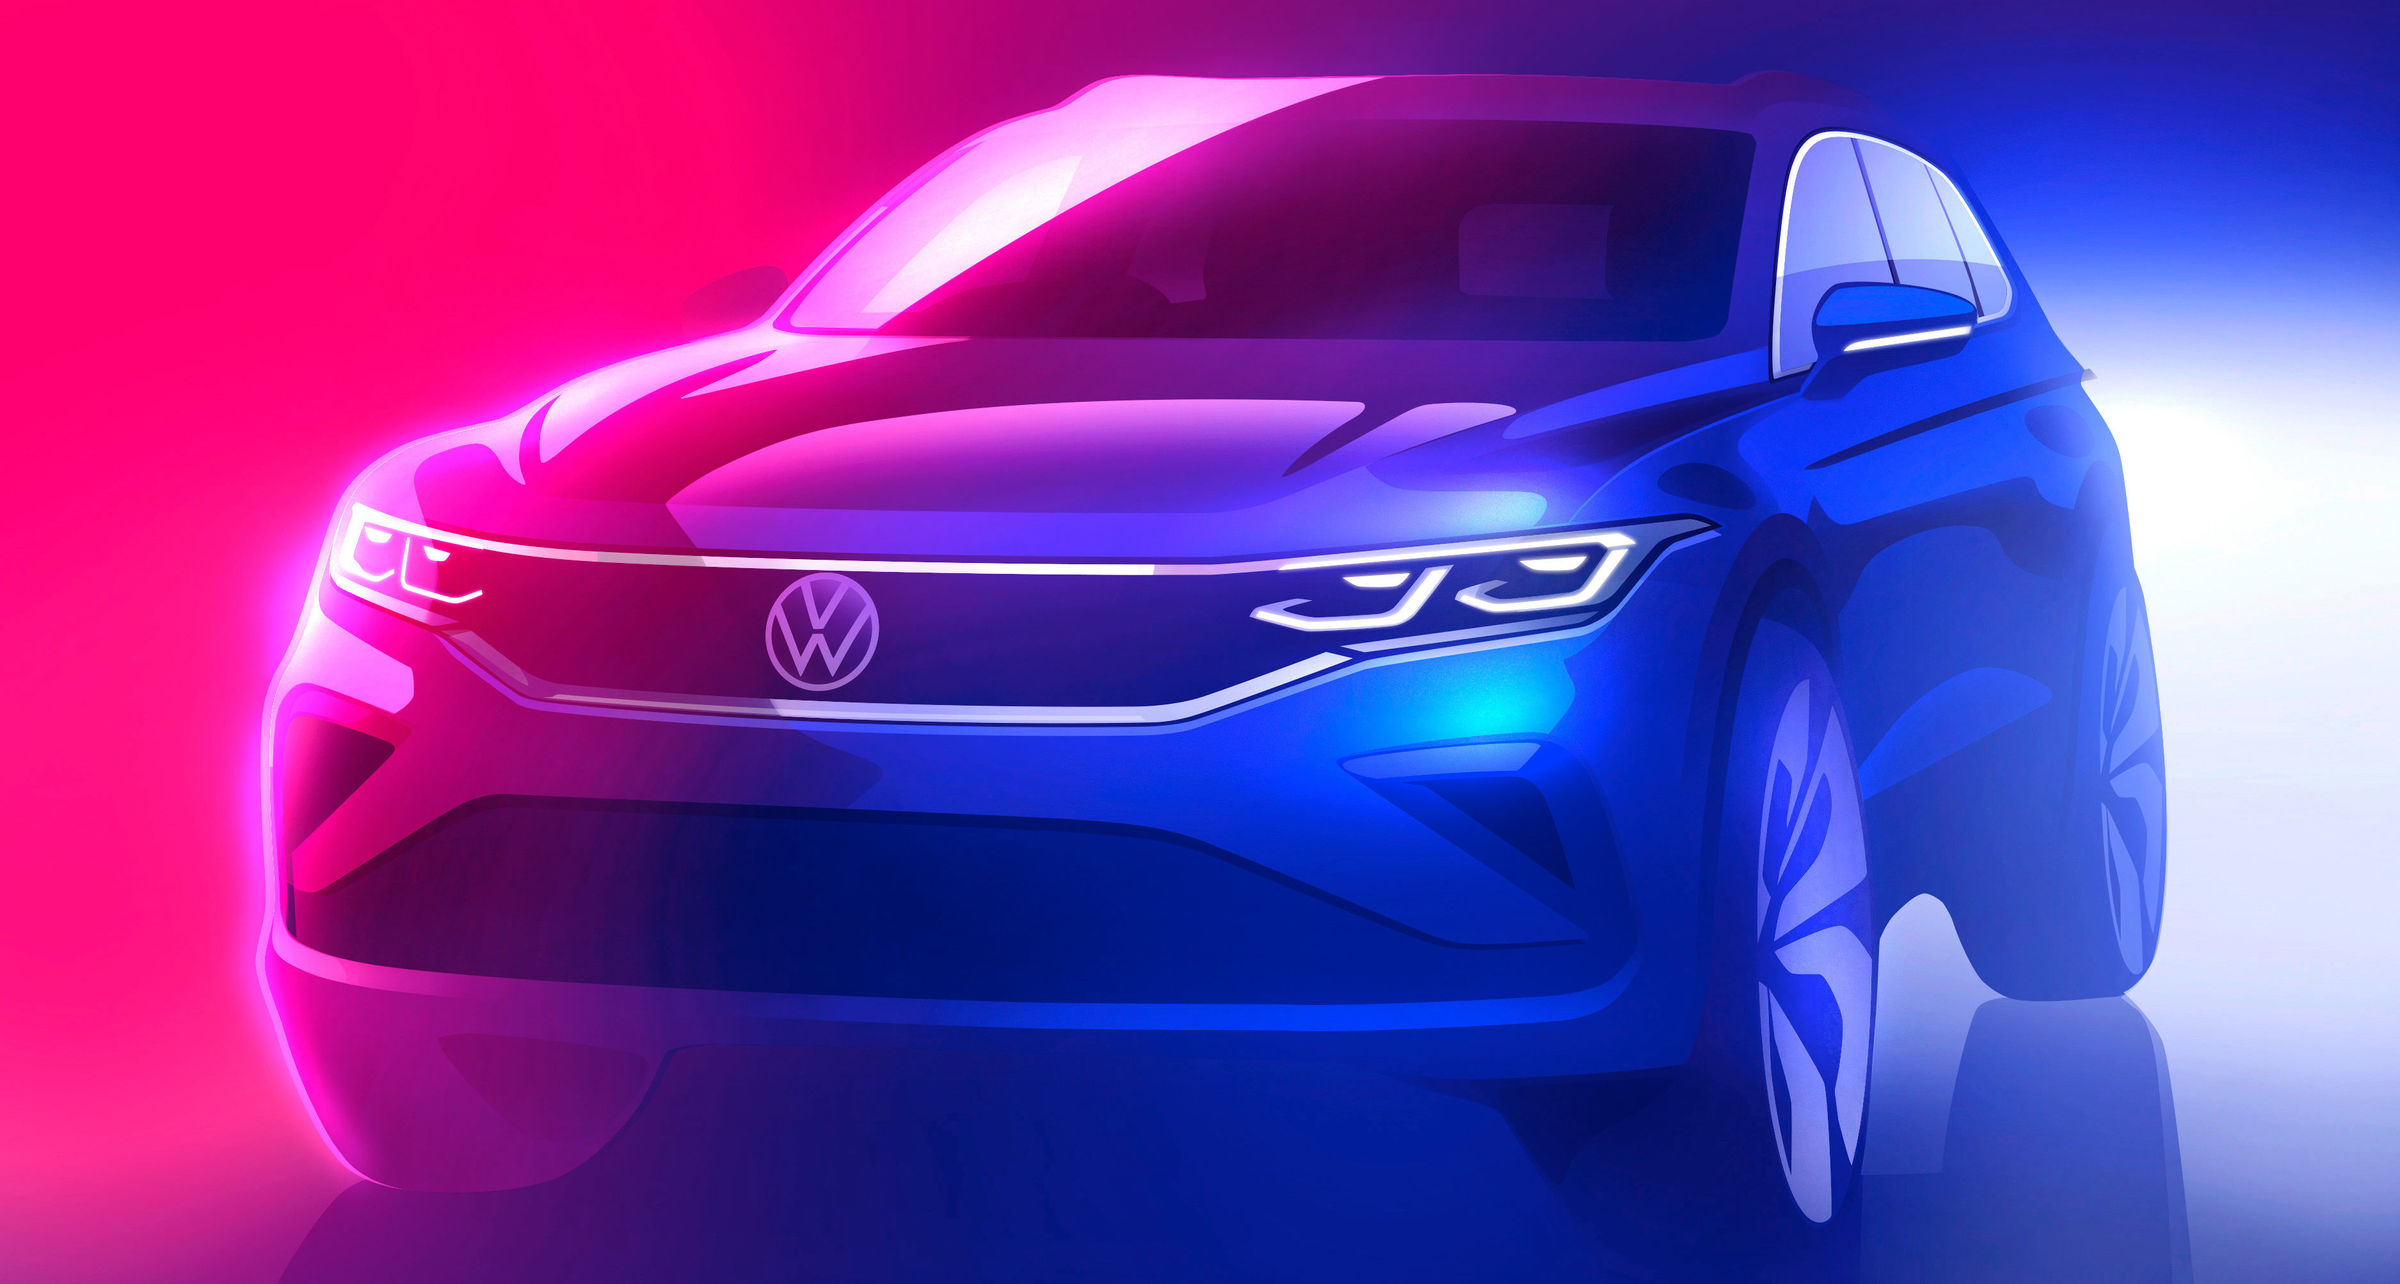 Makyajlı Volkswagen Tiguan'ın resmi çizim görseli paylaşıldı